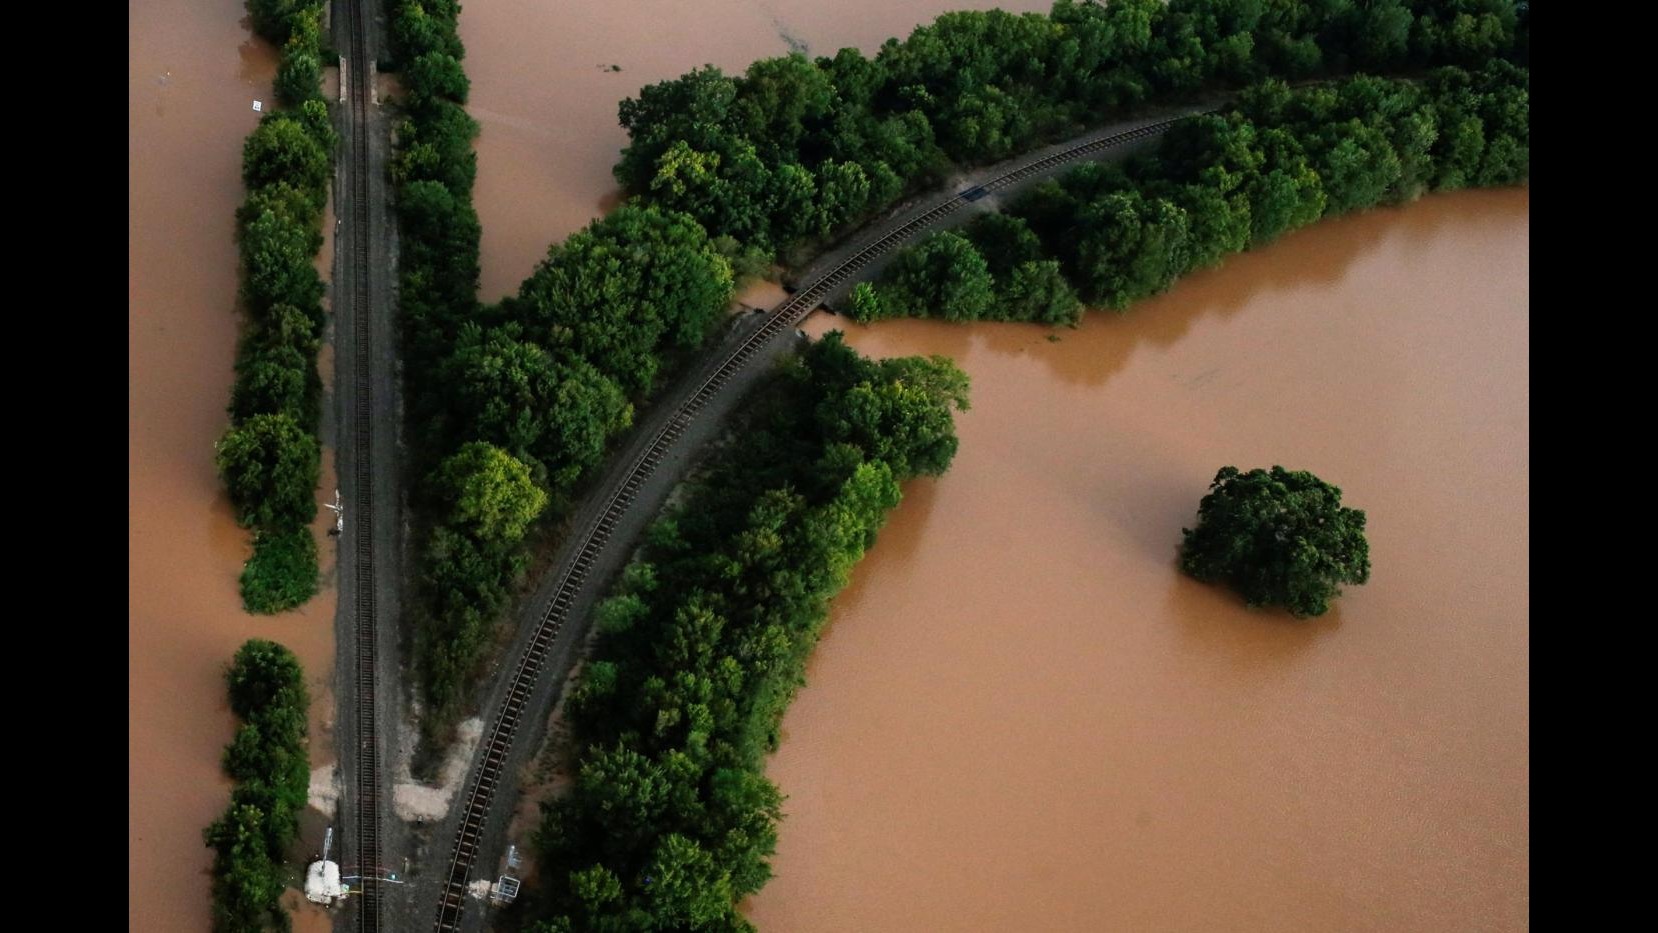 Harvey inonda il Texas: abitanti in salvo su barche e kayak